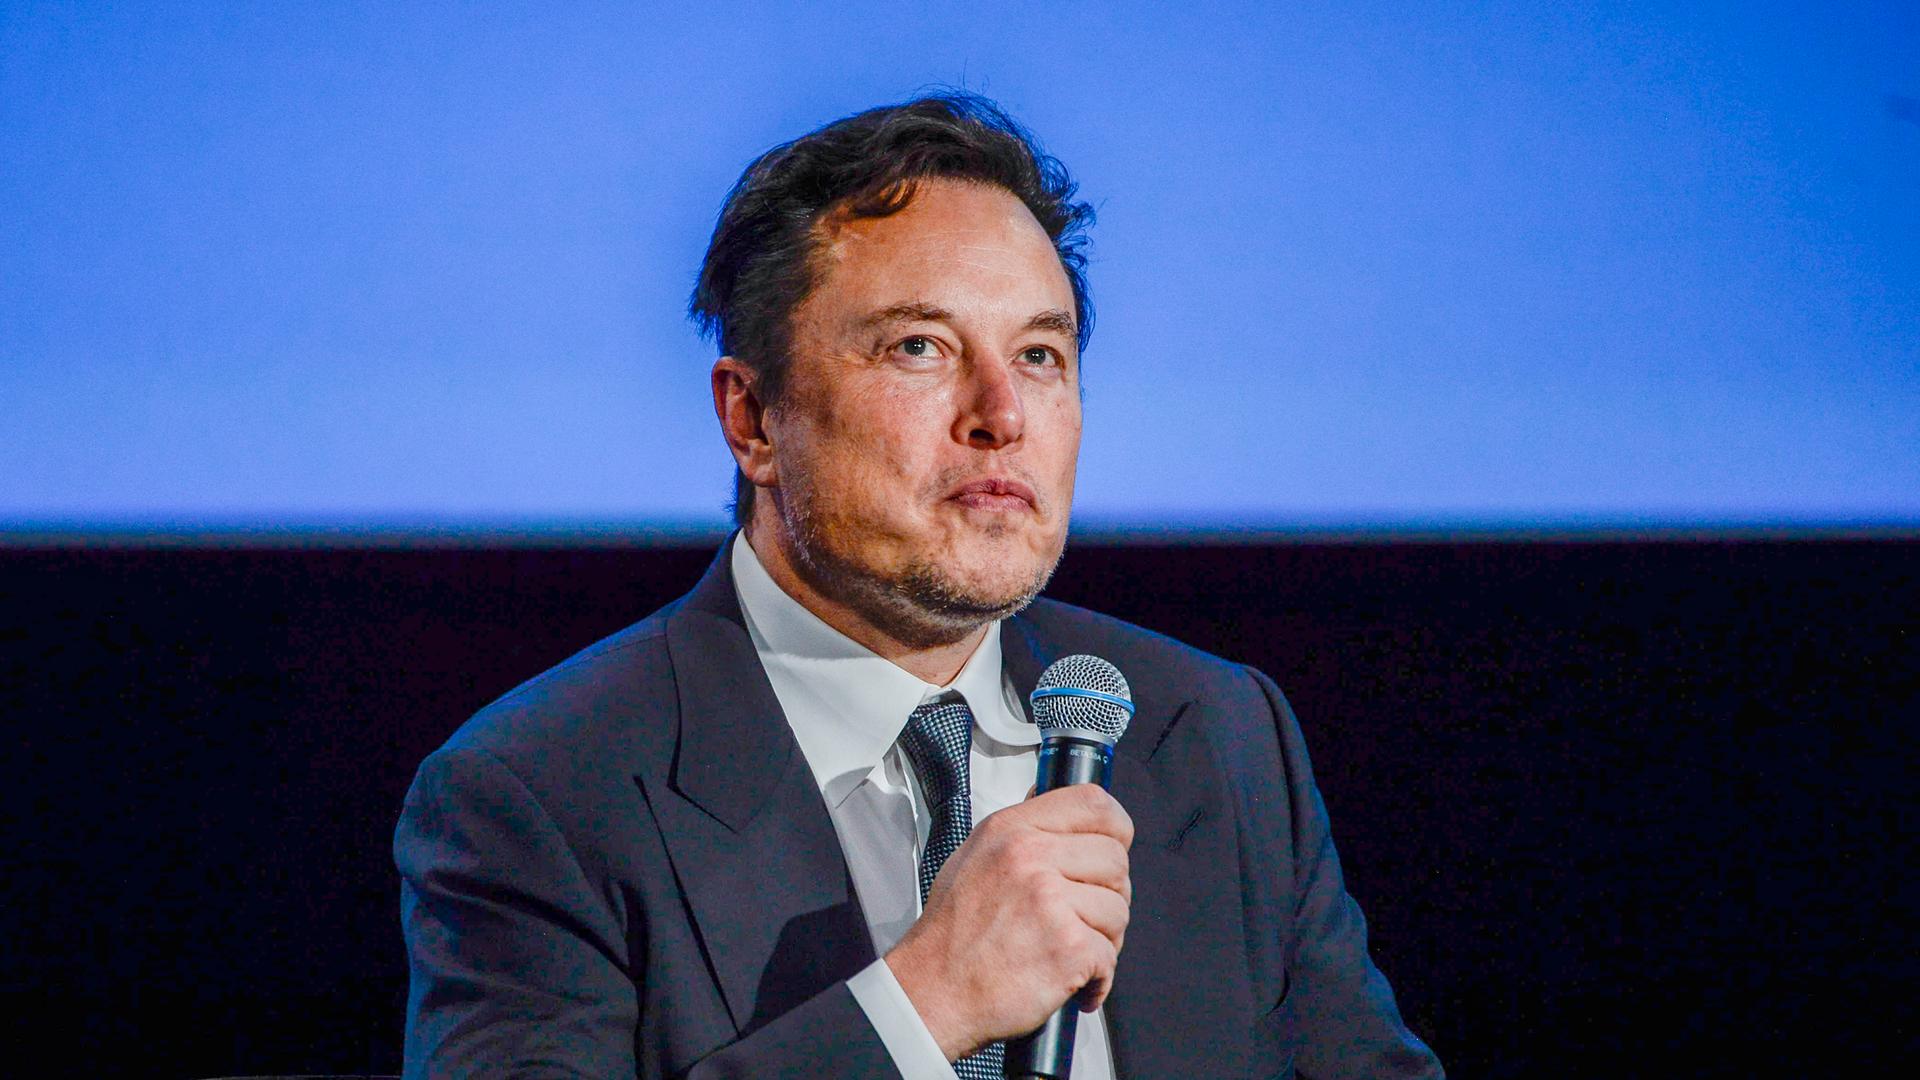 Elon Musk sitzt bei einem Interview und hält ein Mikrofon in der Hand.